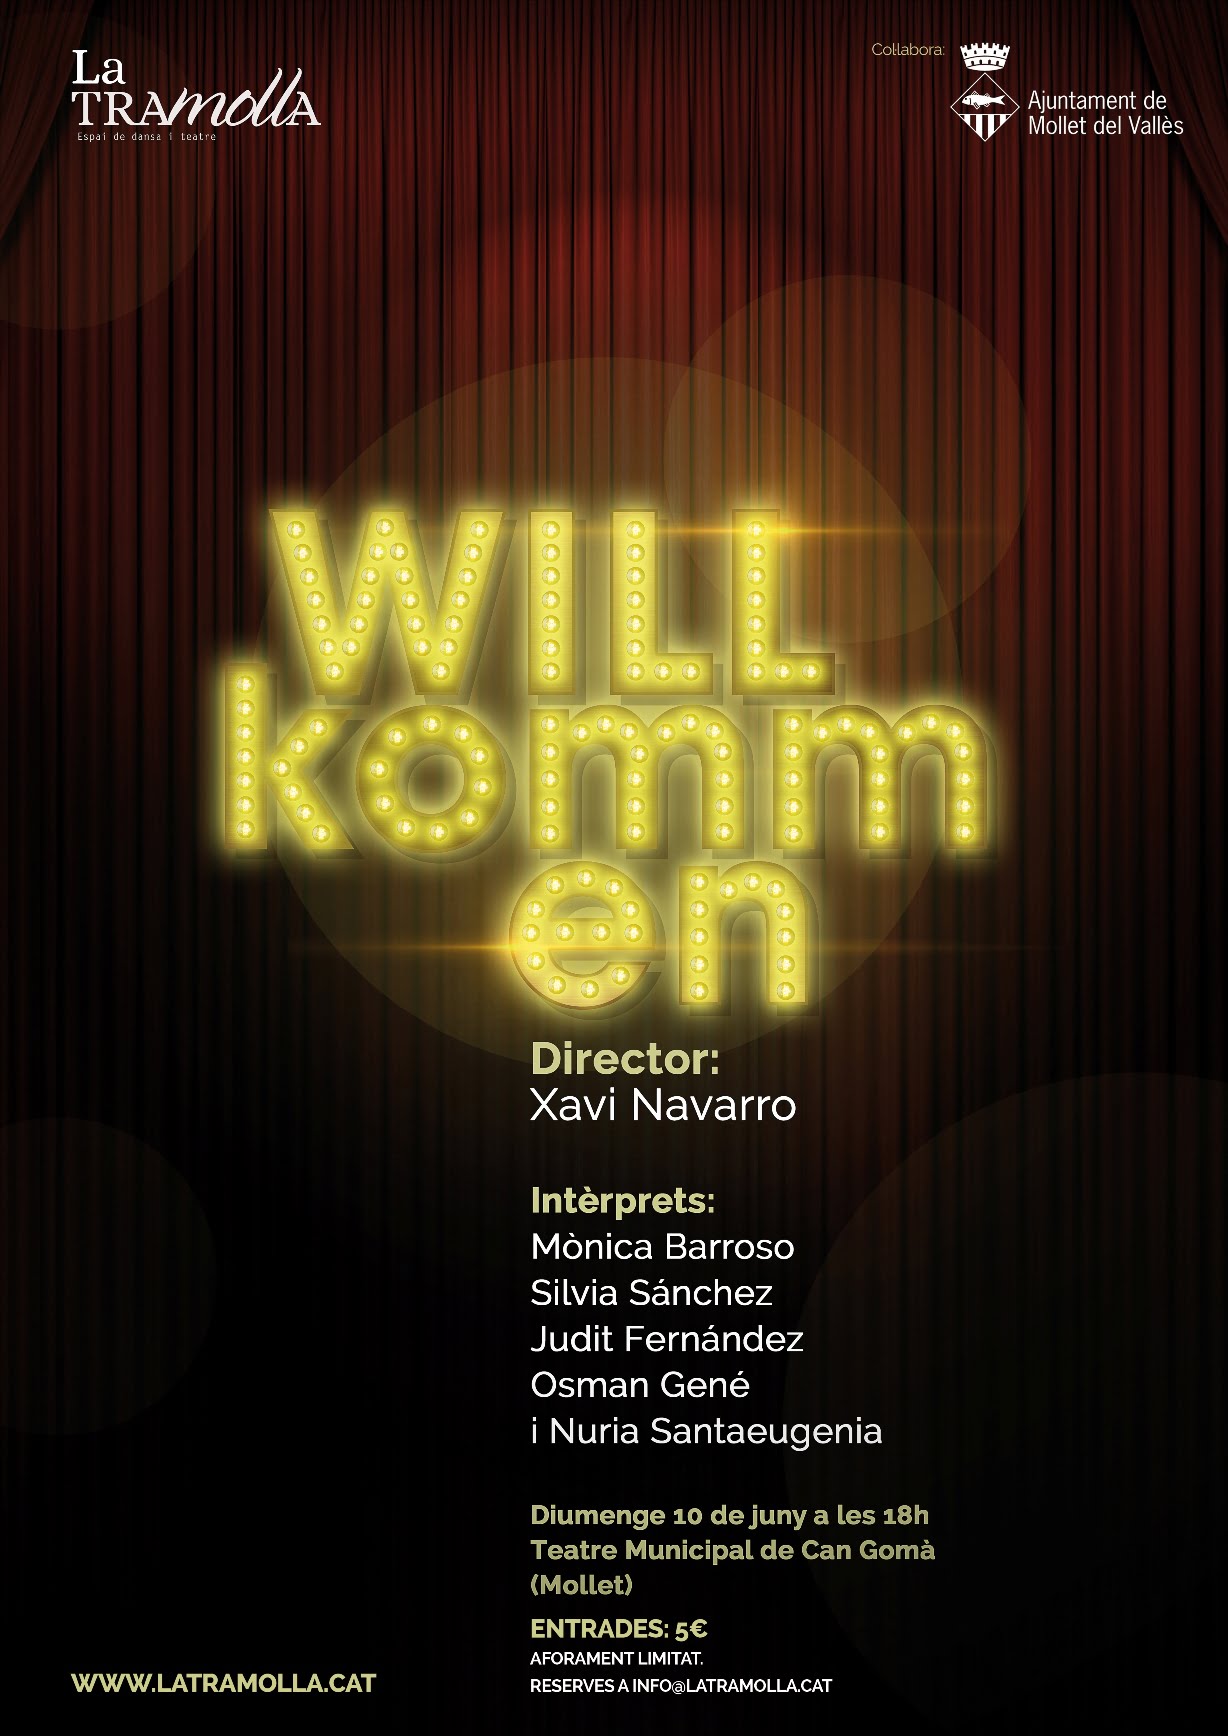 El grup de teatre musical de La Tramolla estrena “Willkommen” aquest diumenge a Can Gomà